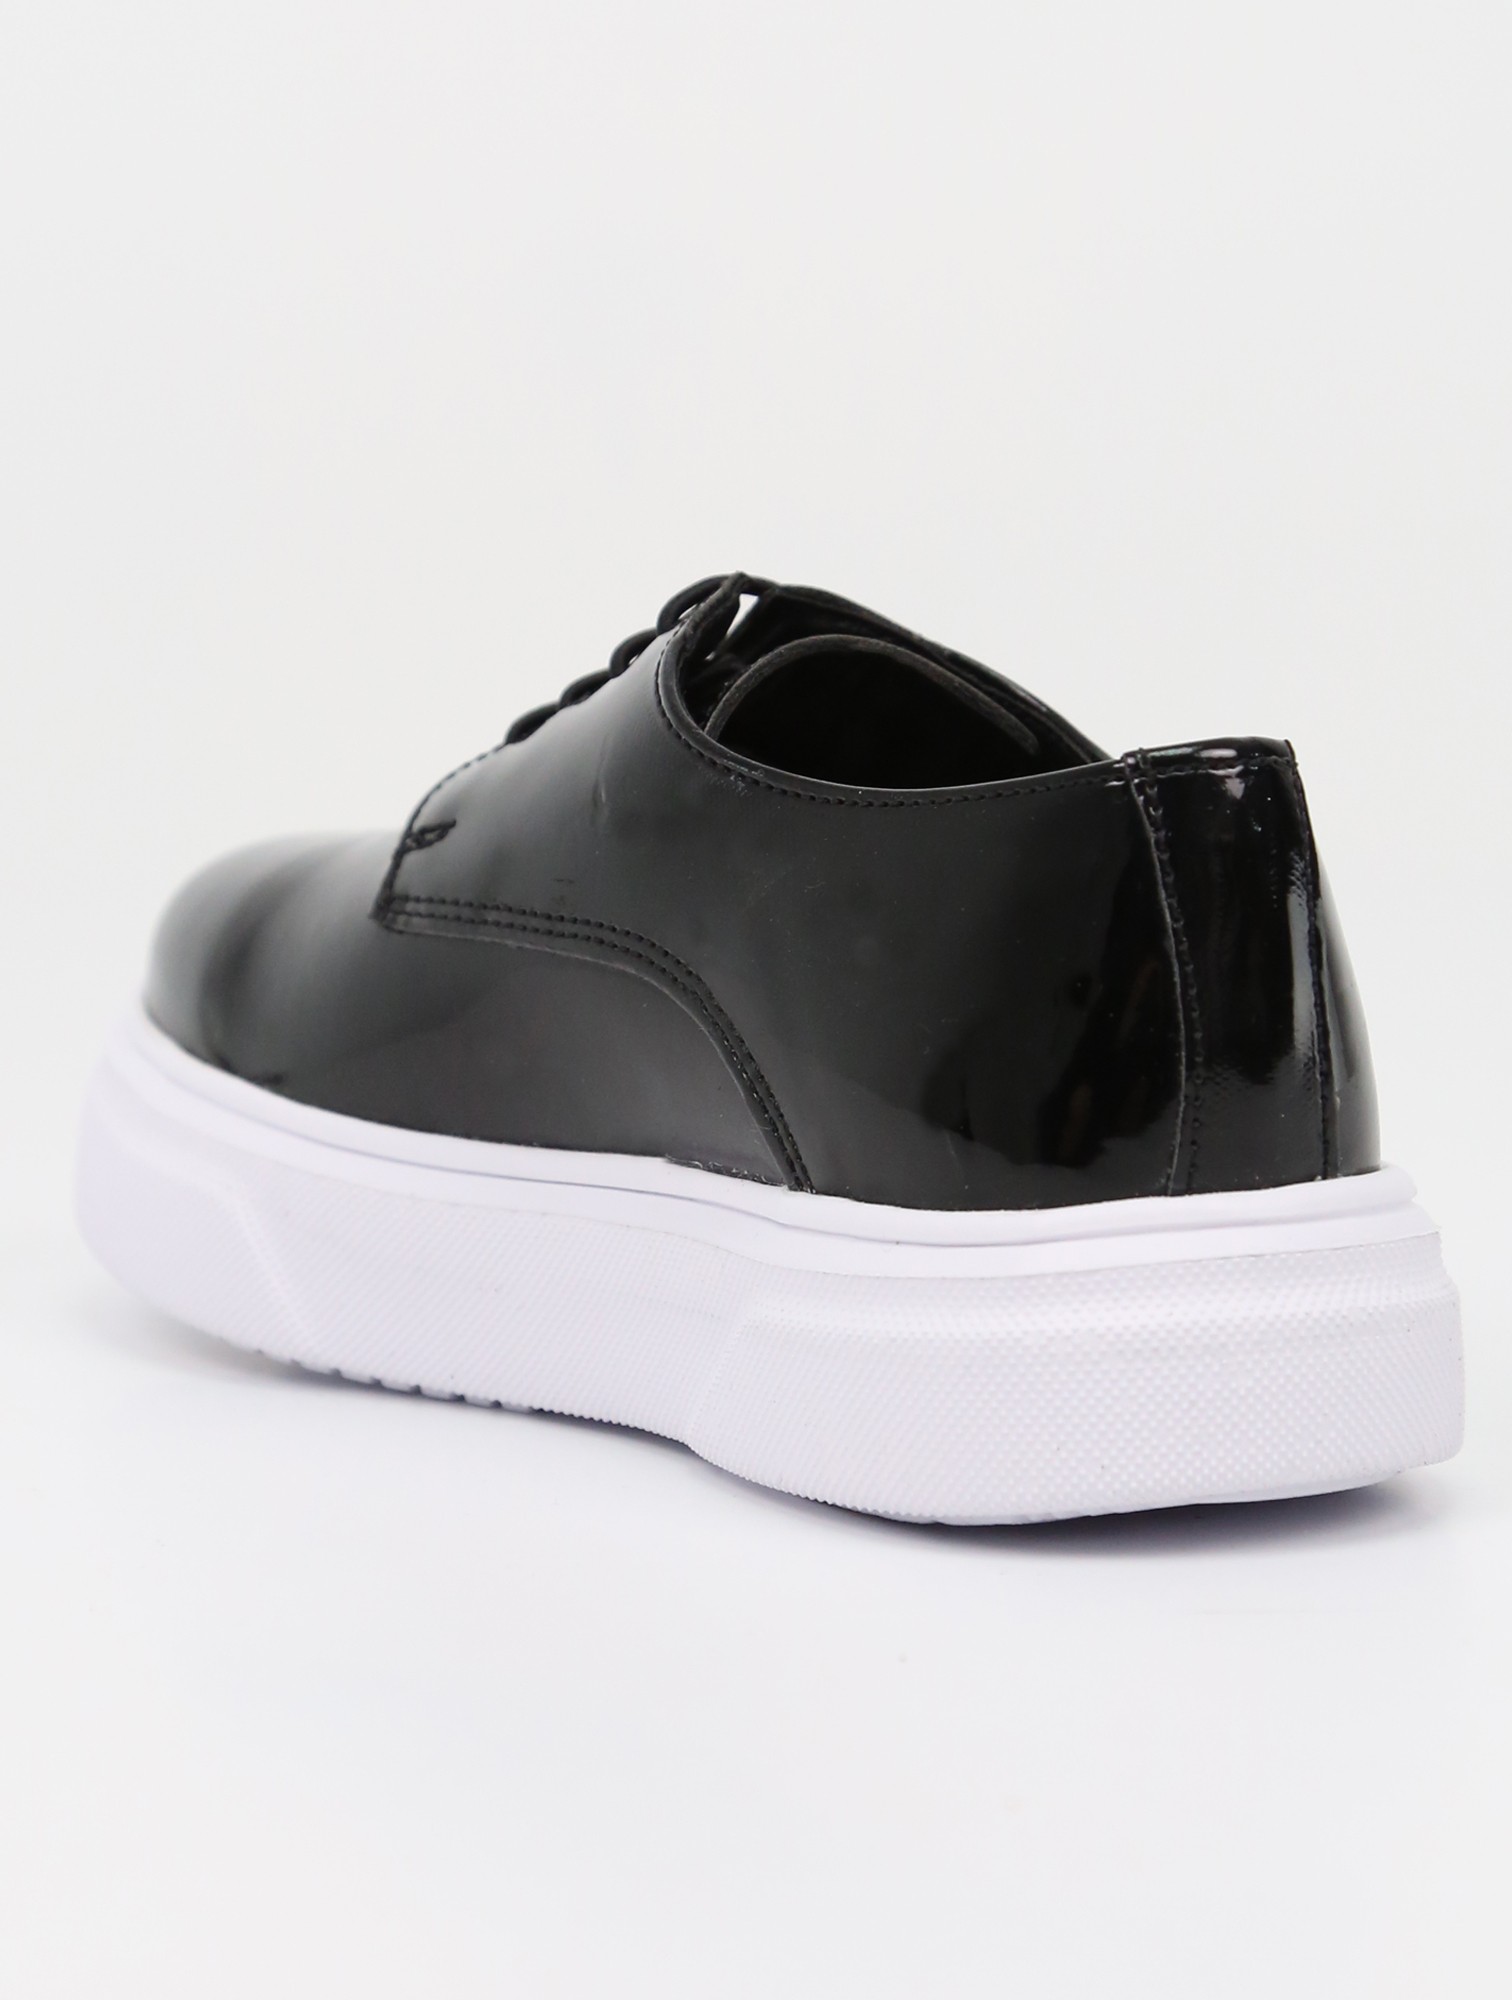 SIRRI Schwarze Slip-On Lackschuhe für Jungen, Sneaker im Gibson-Design für formelle und Freizeitkleidung - Schwarz